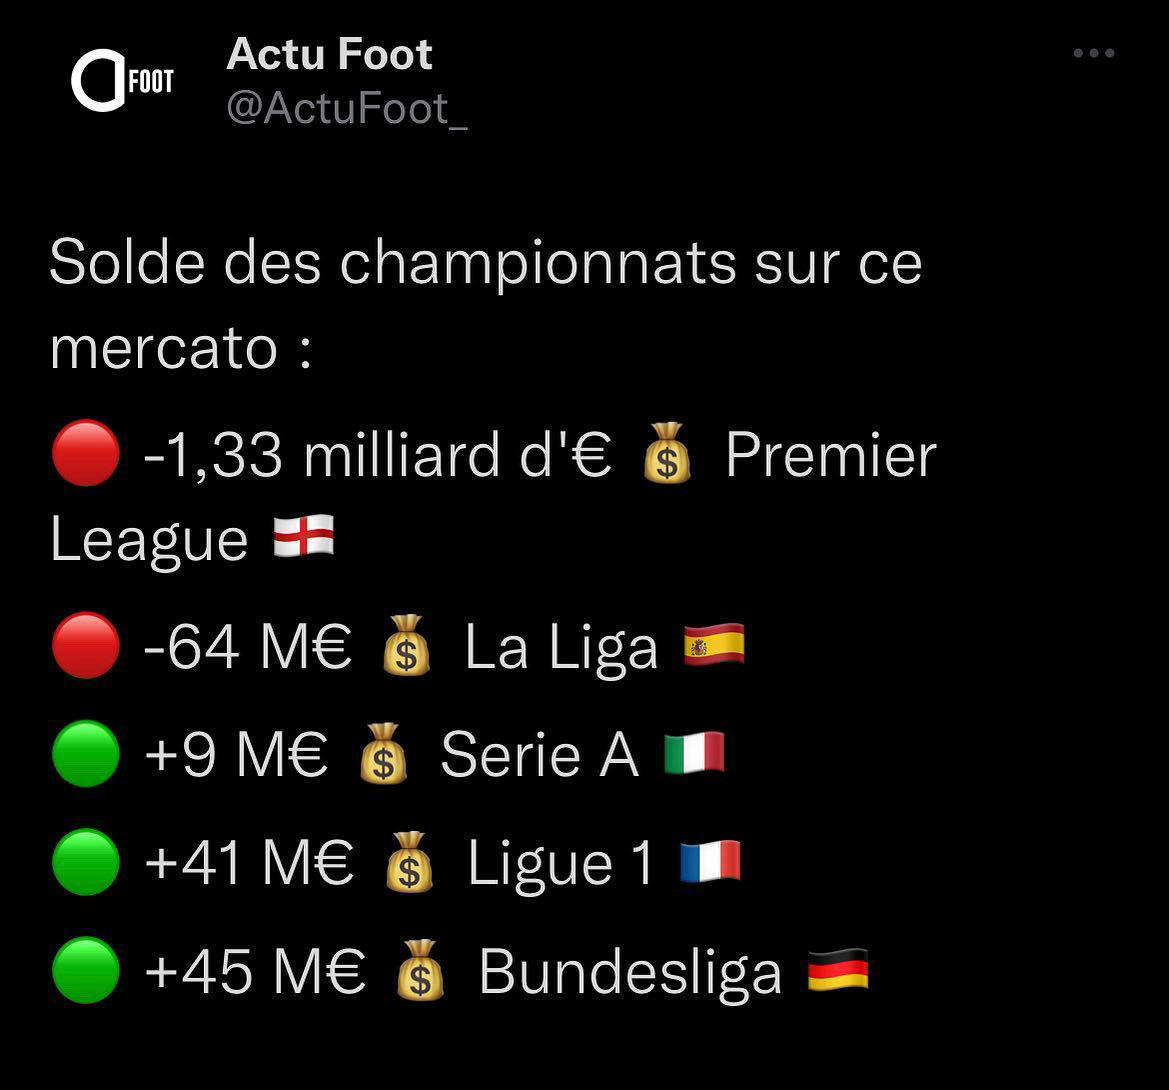 Actu Foot - La Premier League